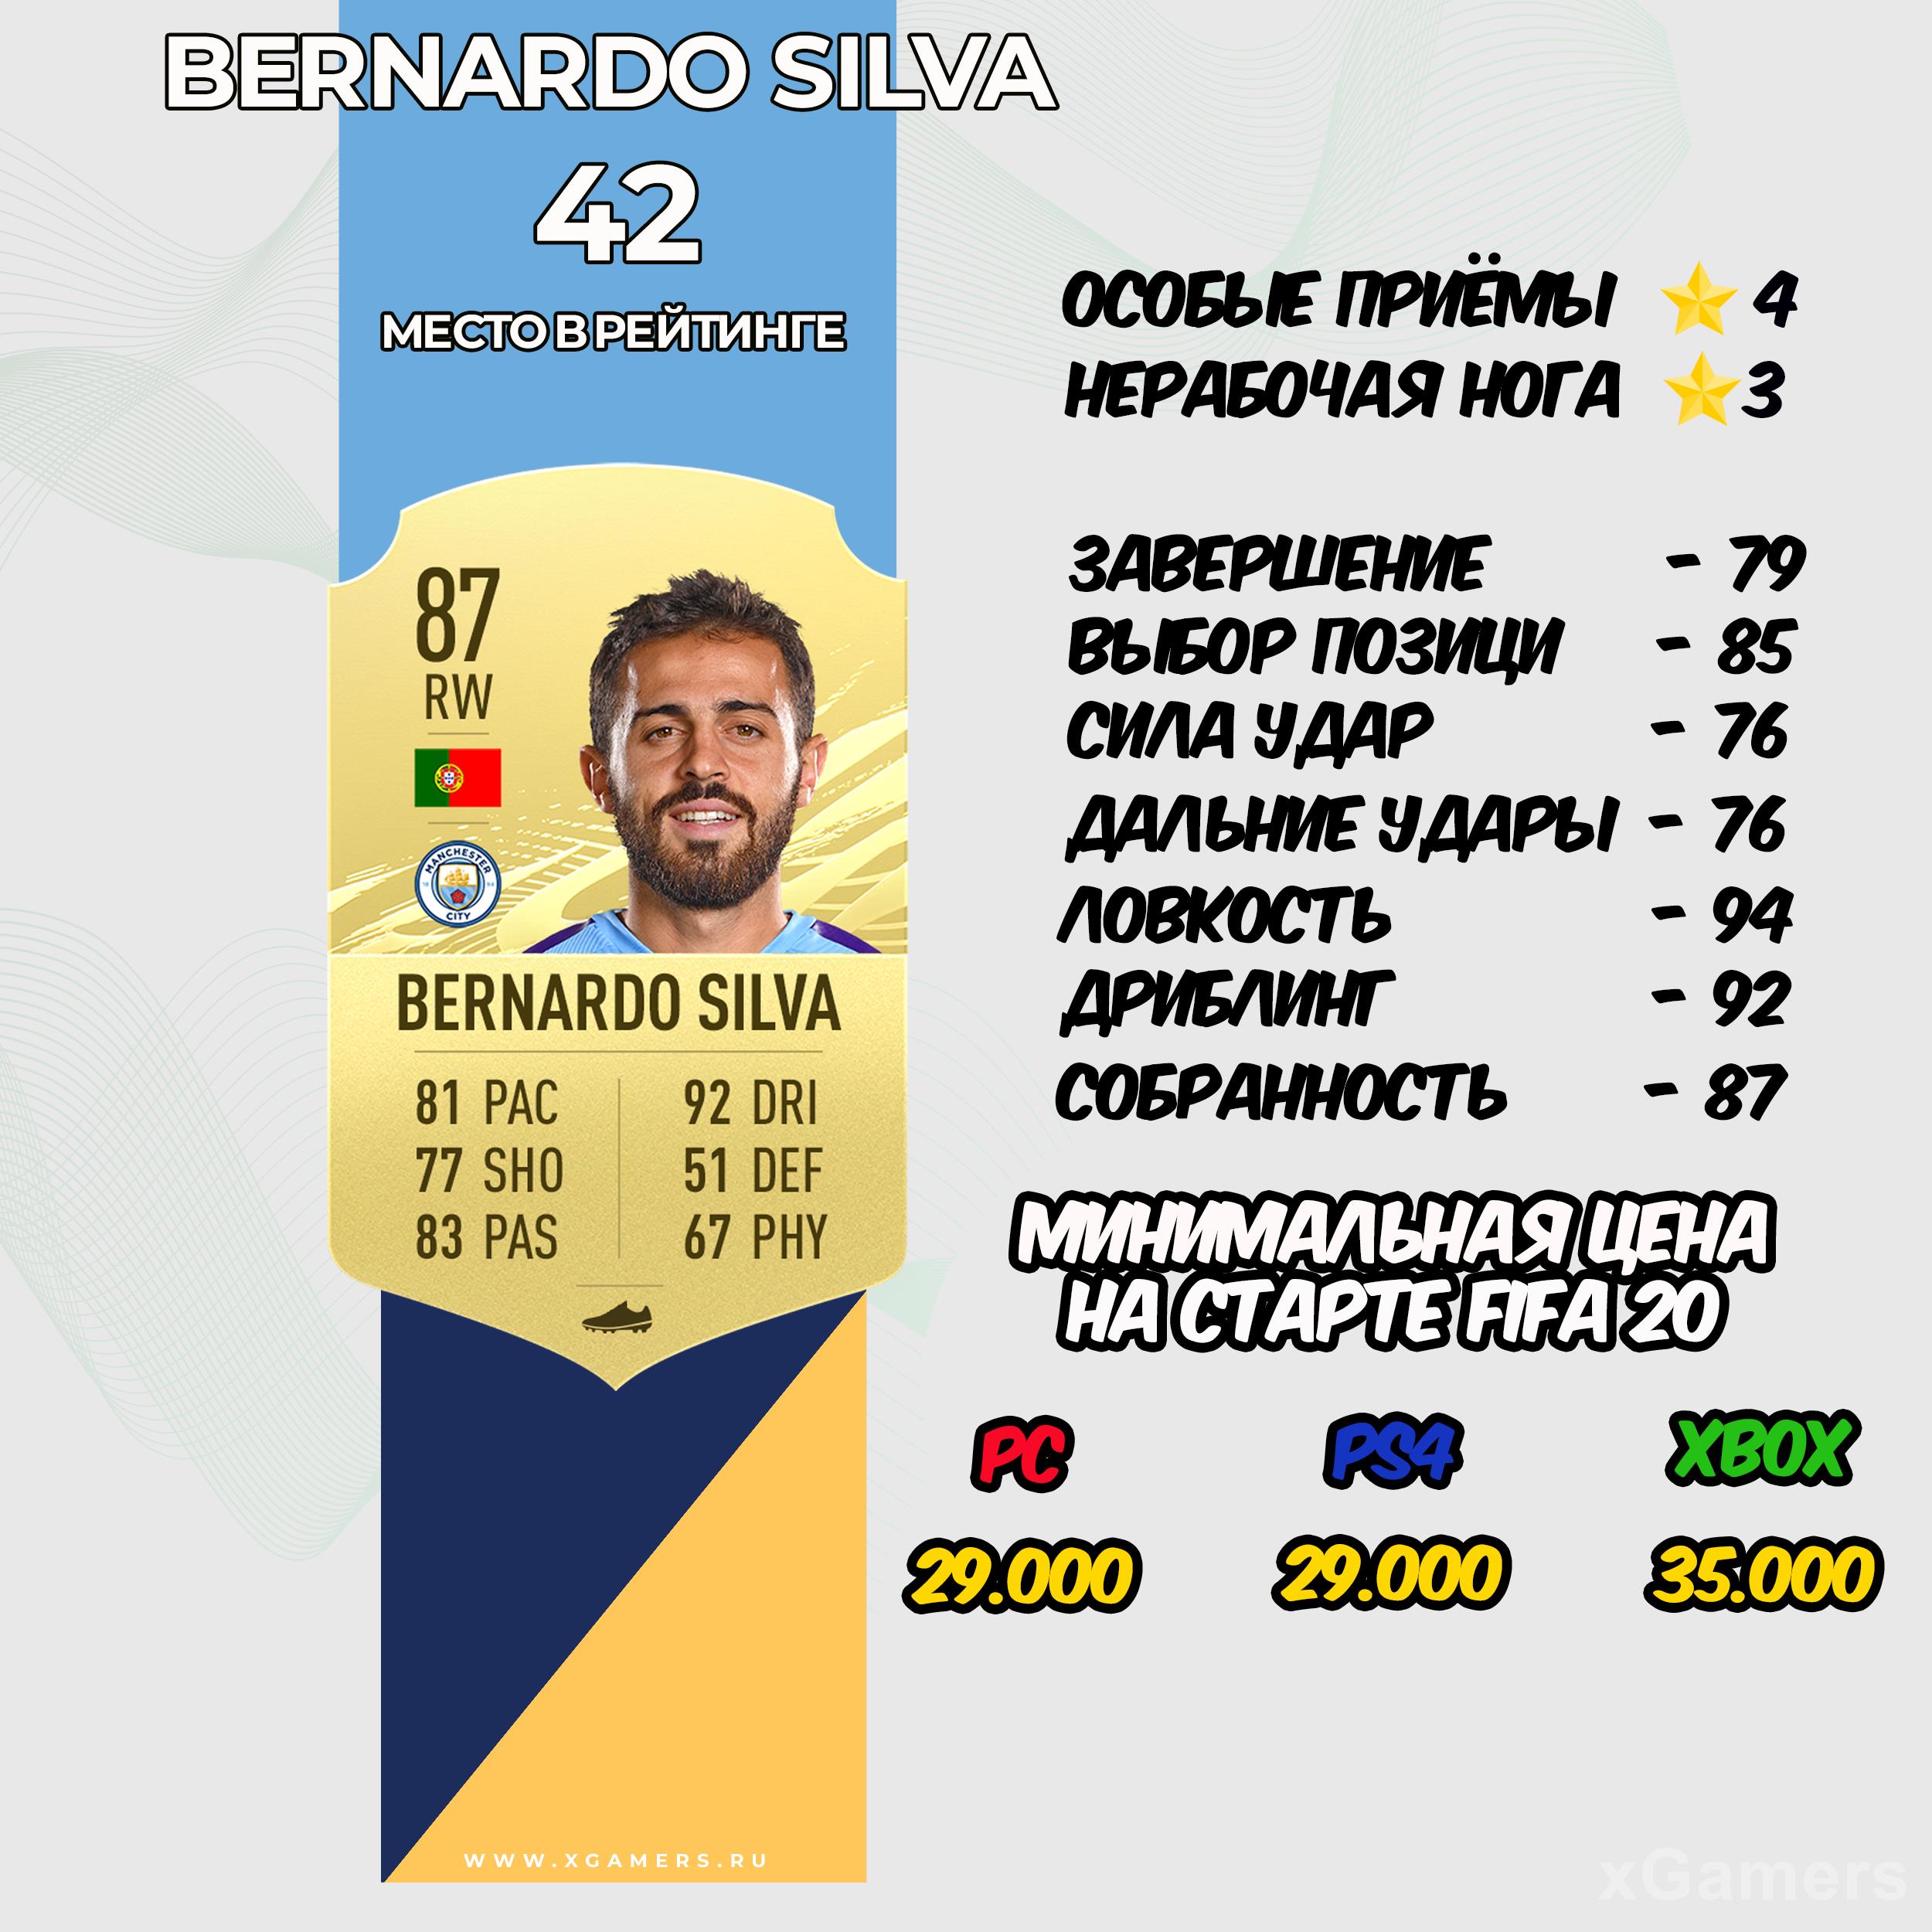 Bernardo Silva - место в рейтинге 42